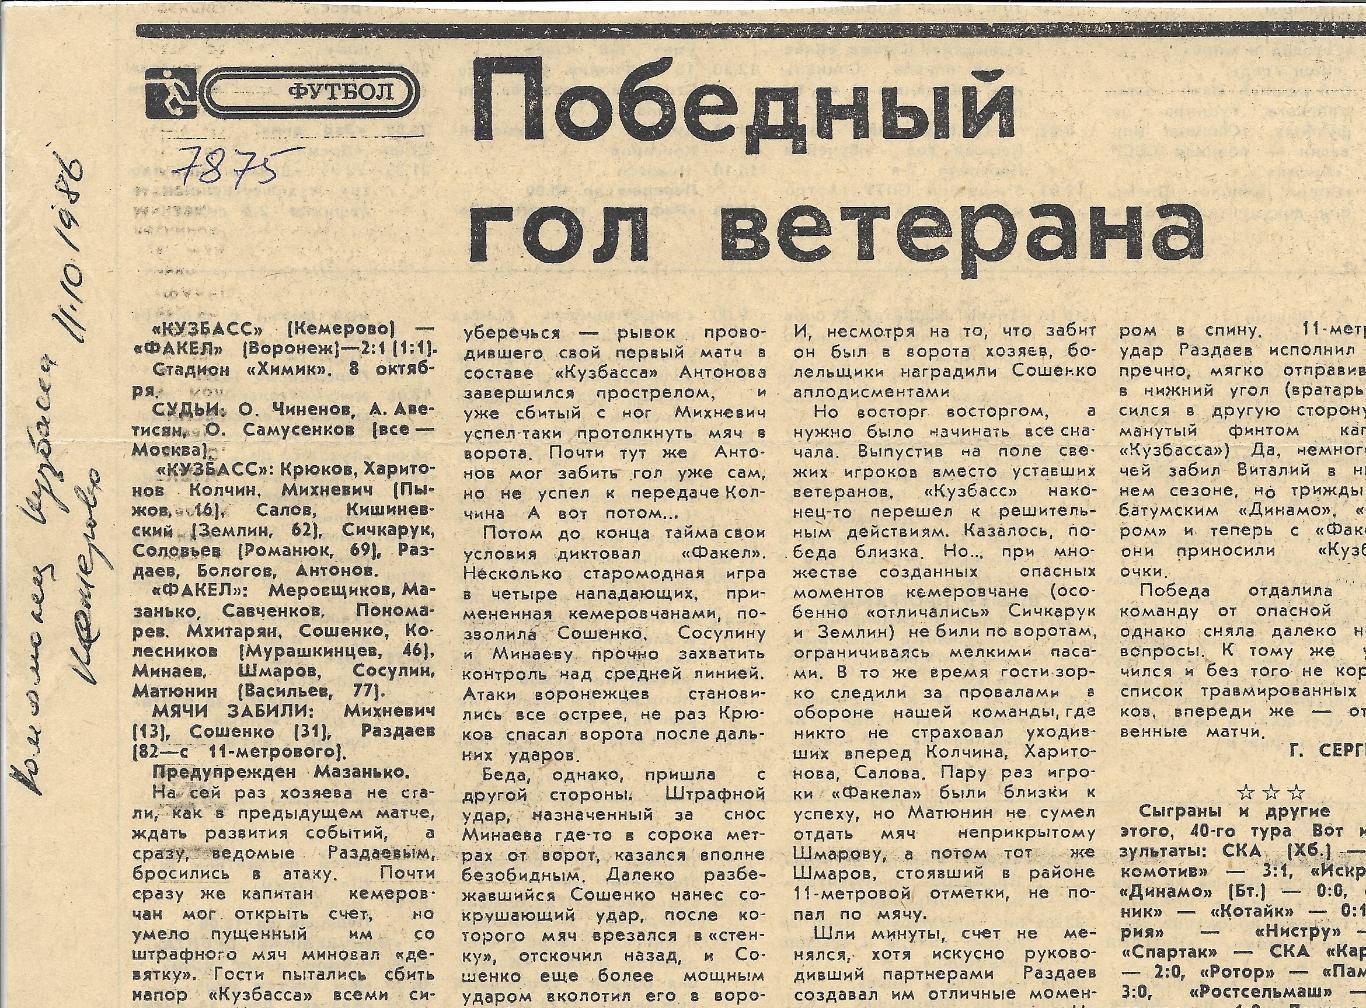 Обзор_матчей_воронежского ФАКЕЛА. _1986_(7875)